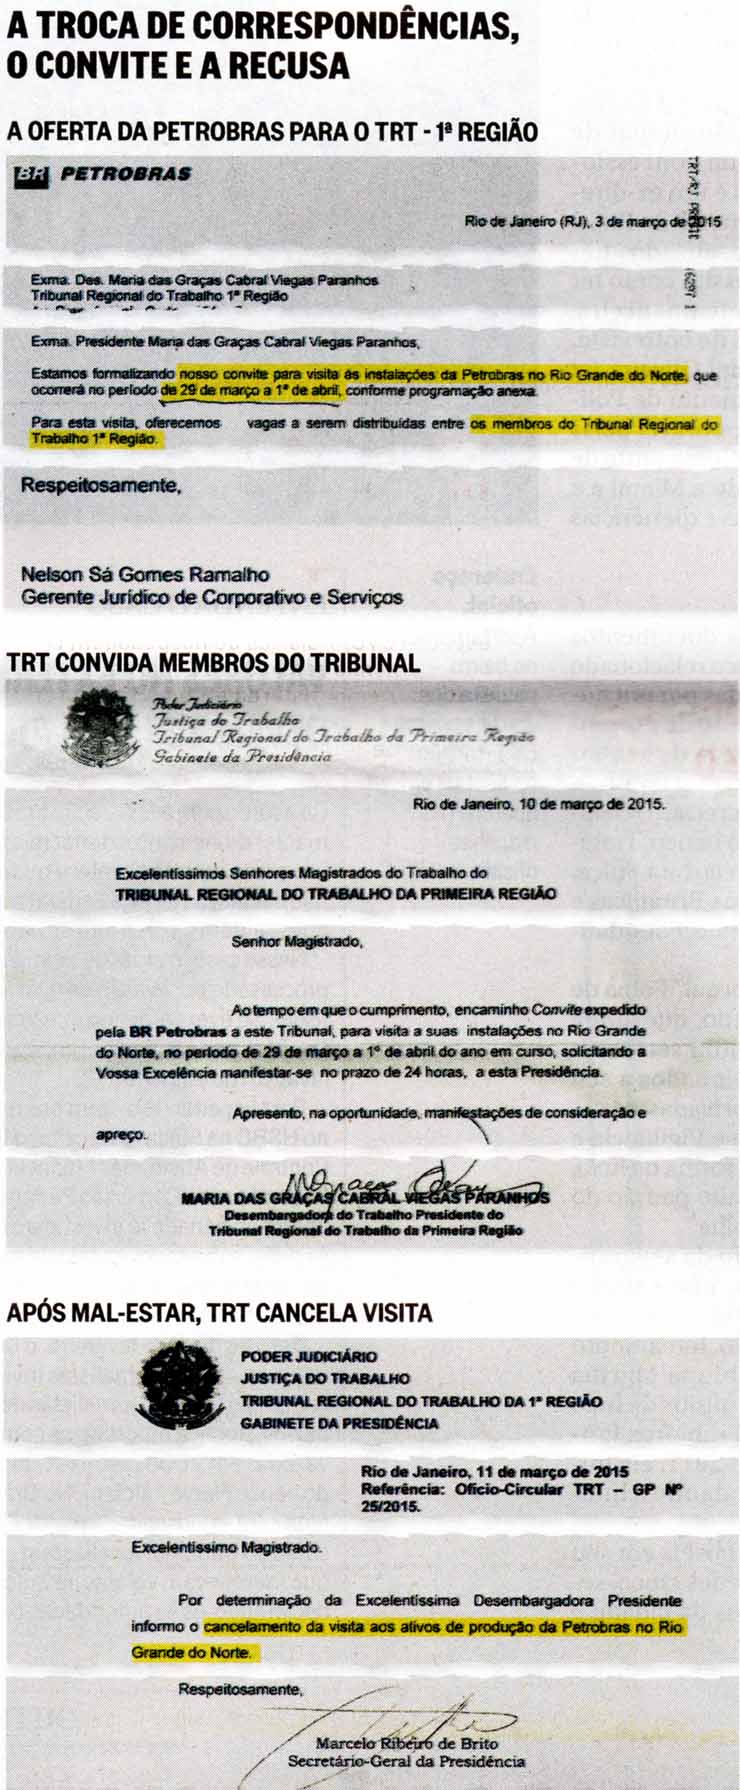 O Globo - 29/03/2015 - A troca de correspondências